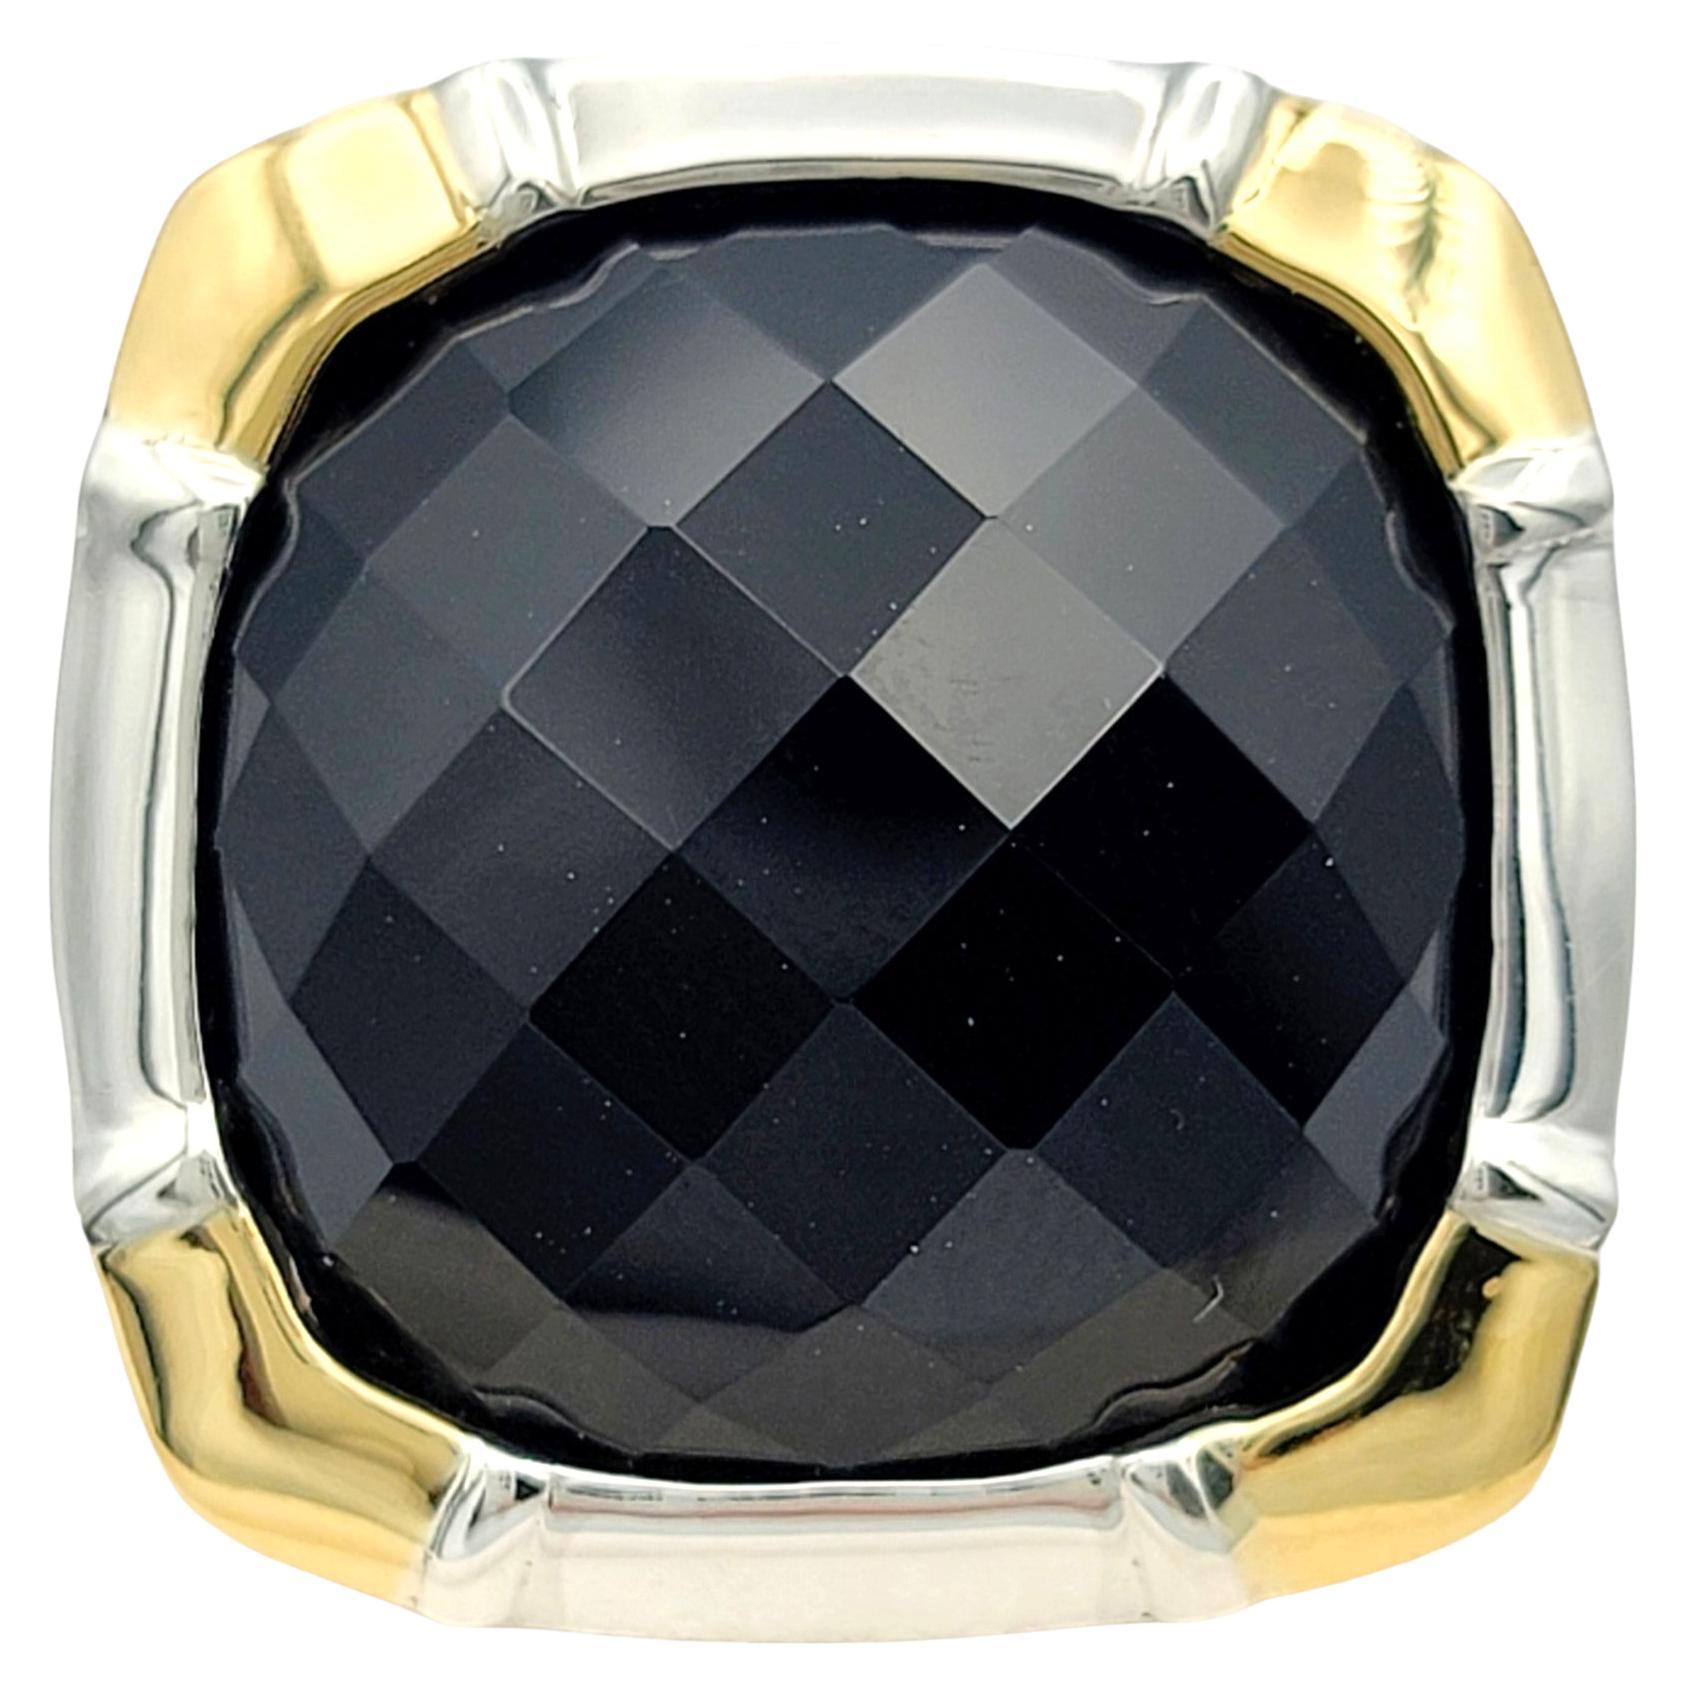 Ringgröße: 8

Dieser wunderschöne Ring aus schwarzem Onyx von Lorenzo strahlt einen kühnen und raffinierten Charme aus, indem er die reiche Anziehungskraft von Onyx mit der zeitlosen Eleganz von 18-karätigem Gelbgold und Sterlingsilber verbindet.